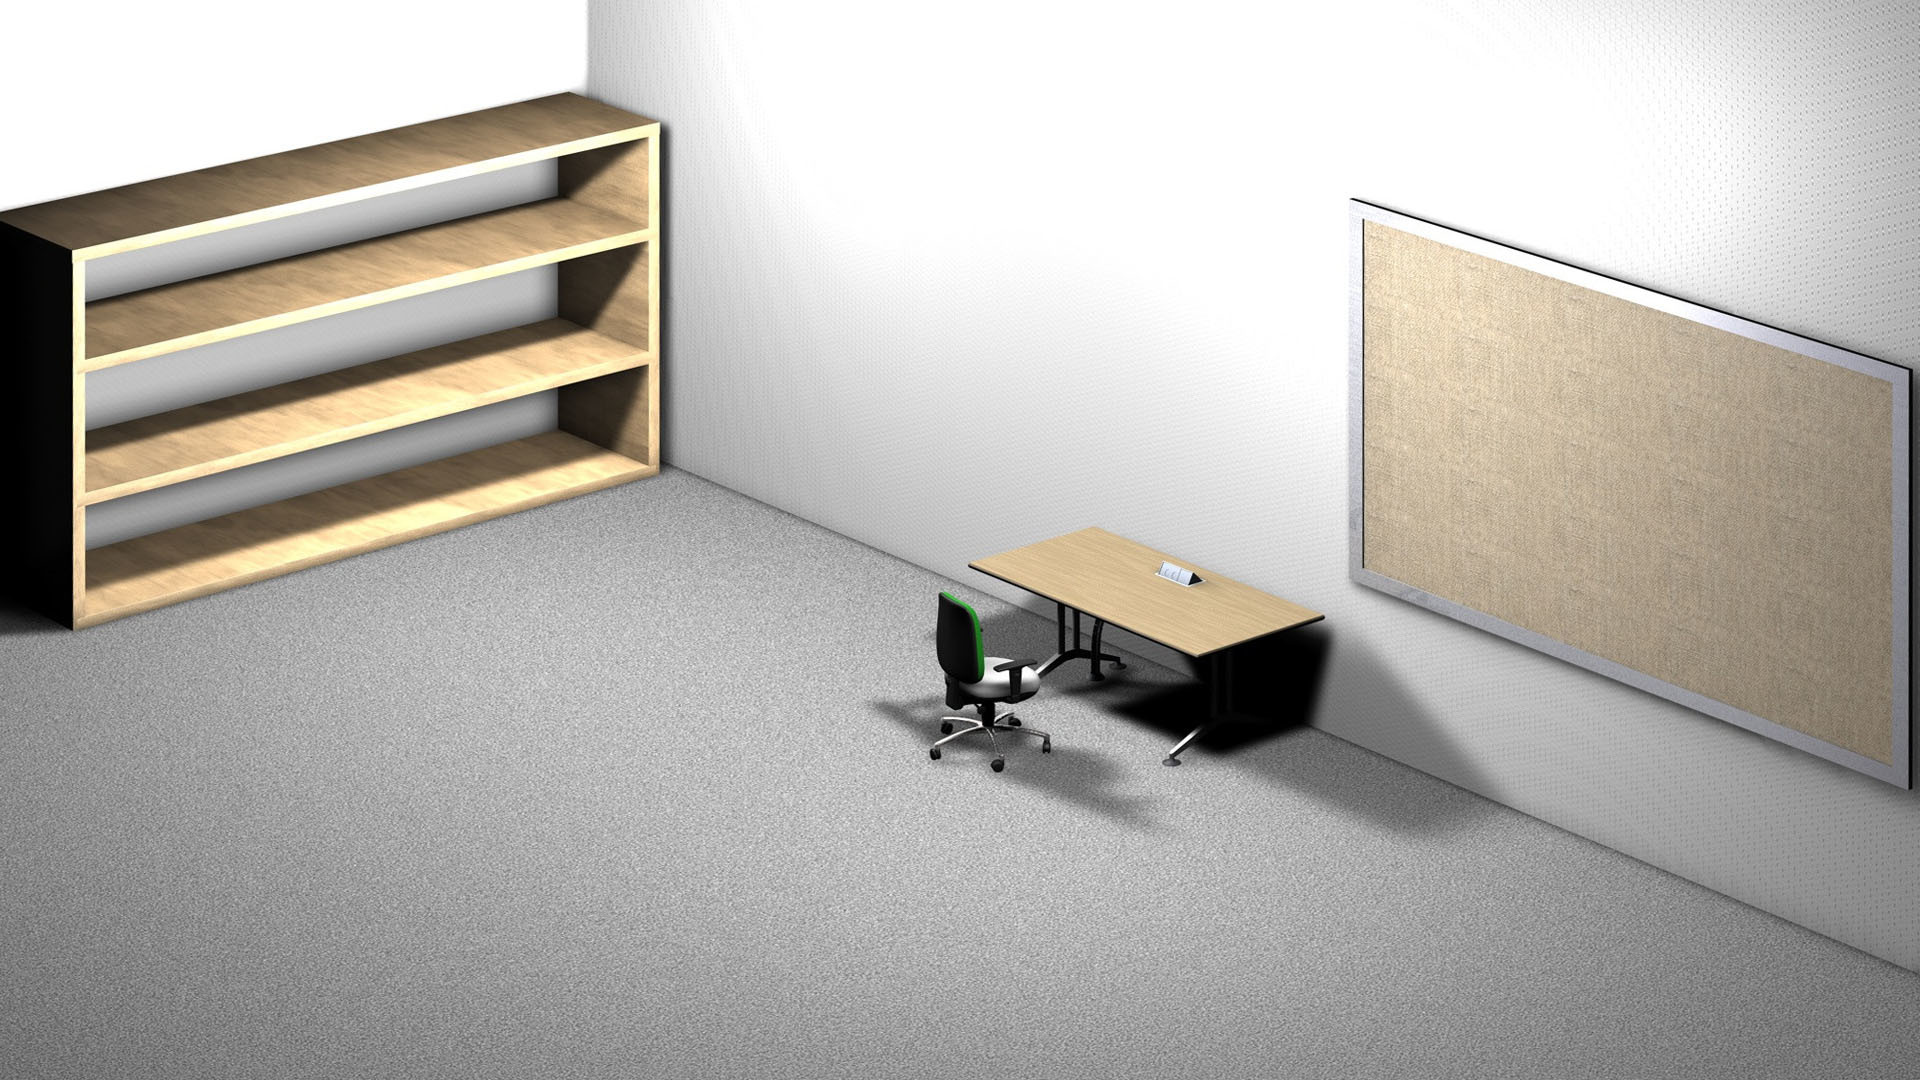 47+ Desk and Shelves Desktop